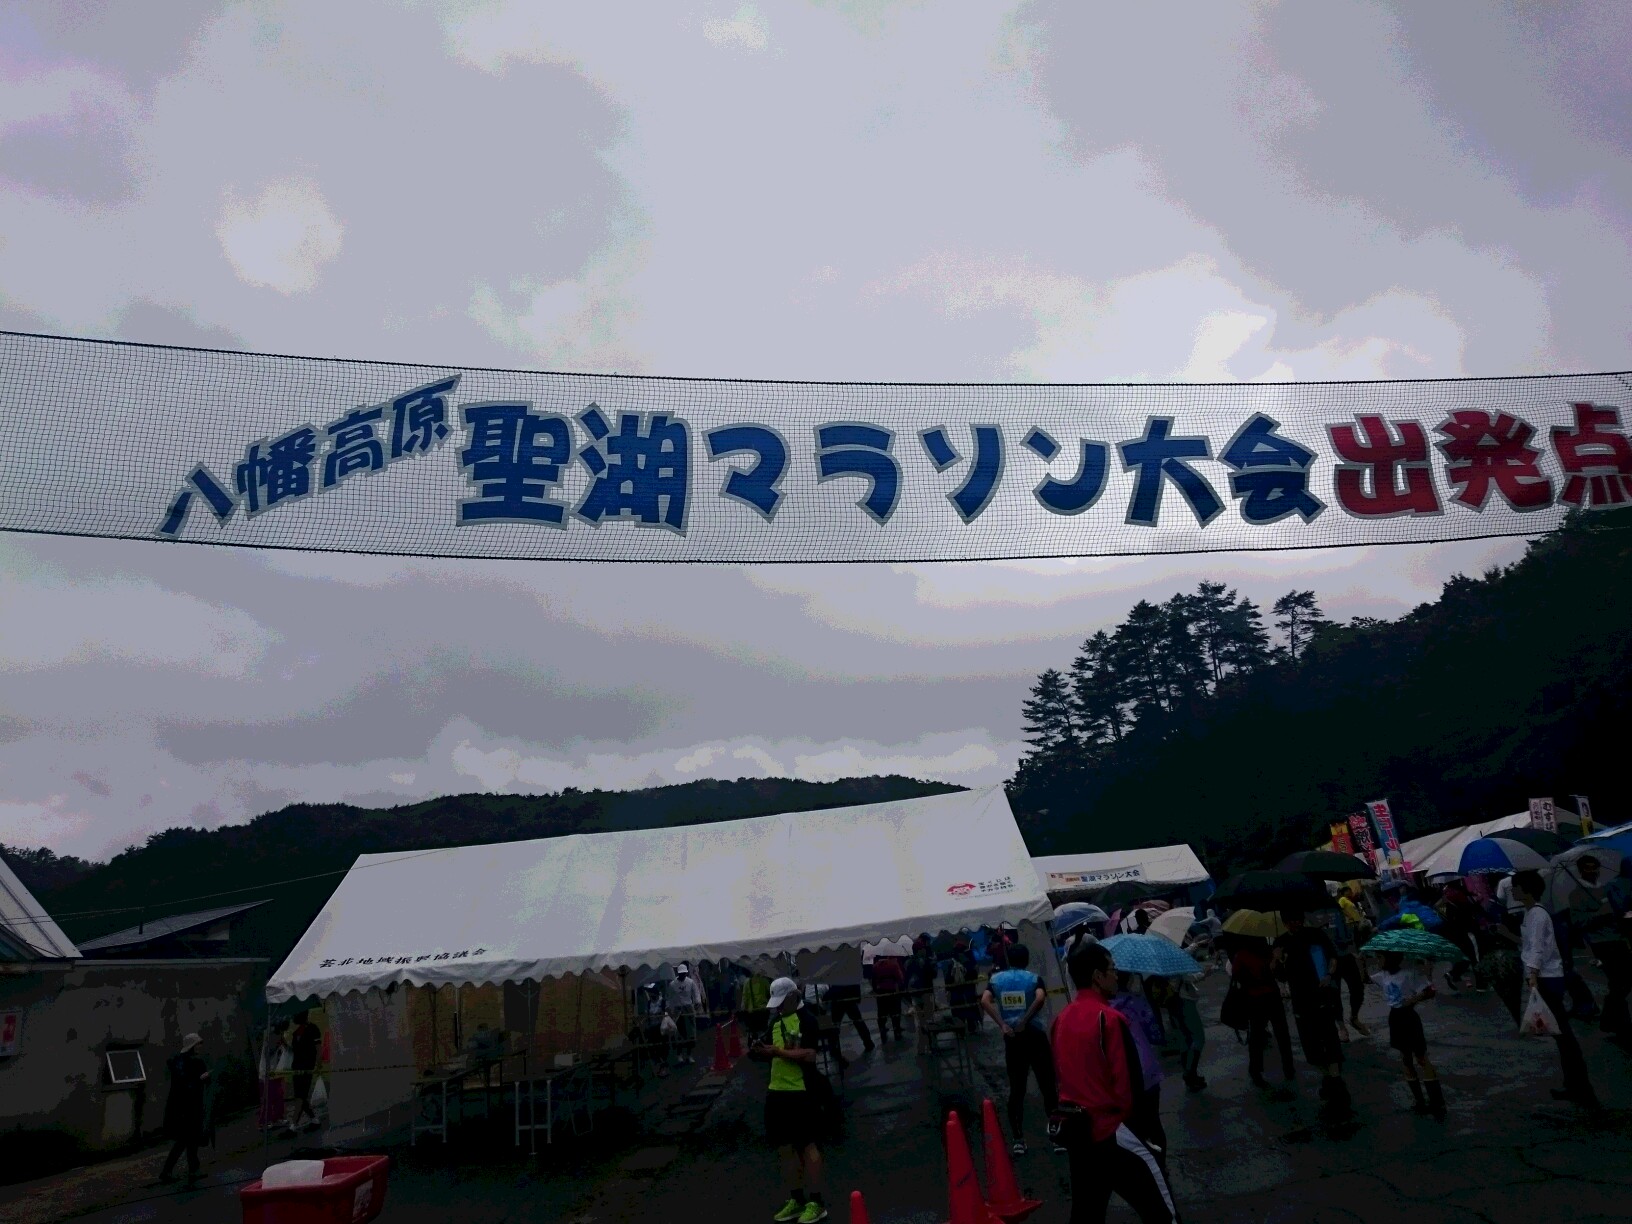 第32回 八幡高原聖湖マラソン フレグランス伽羅 Yuko Kyarablog 広島市中区寺町